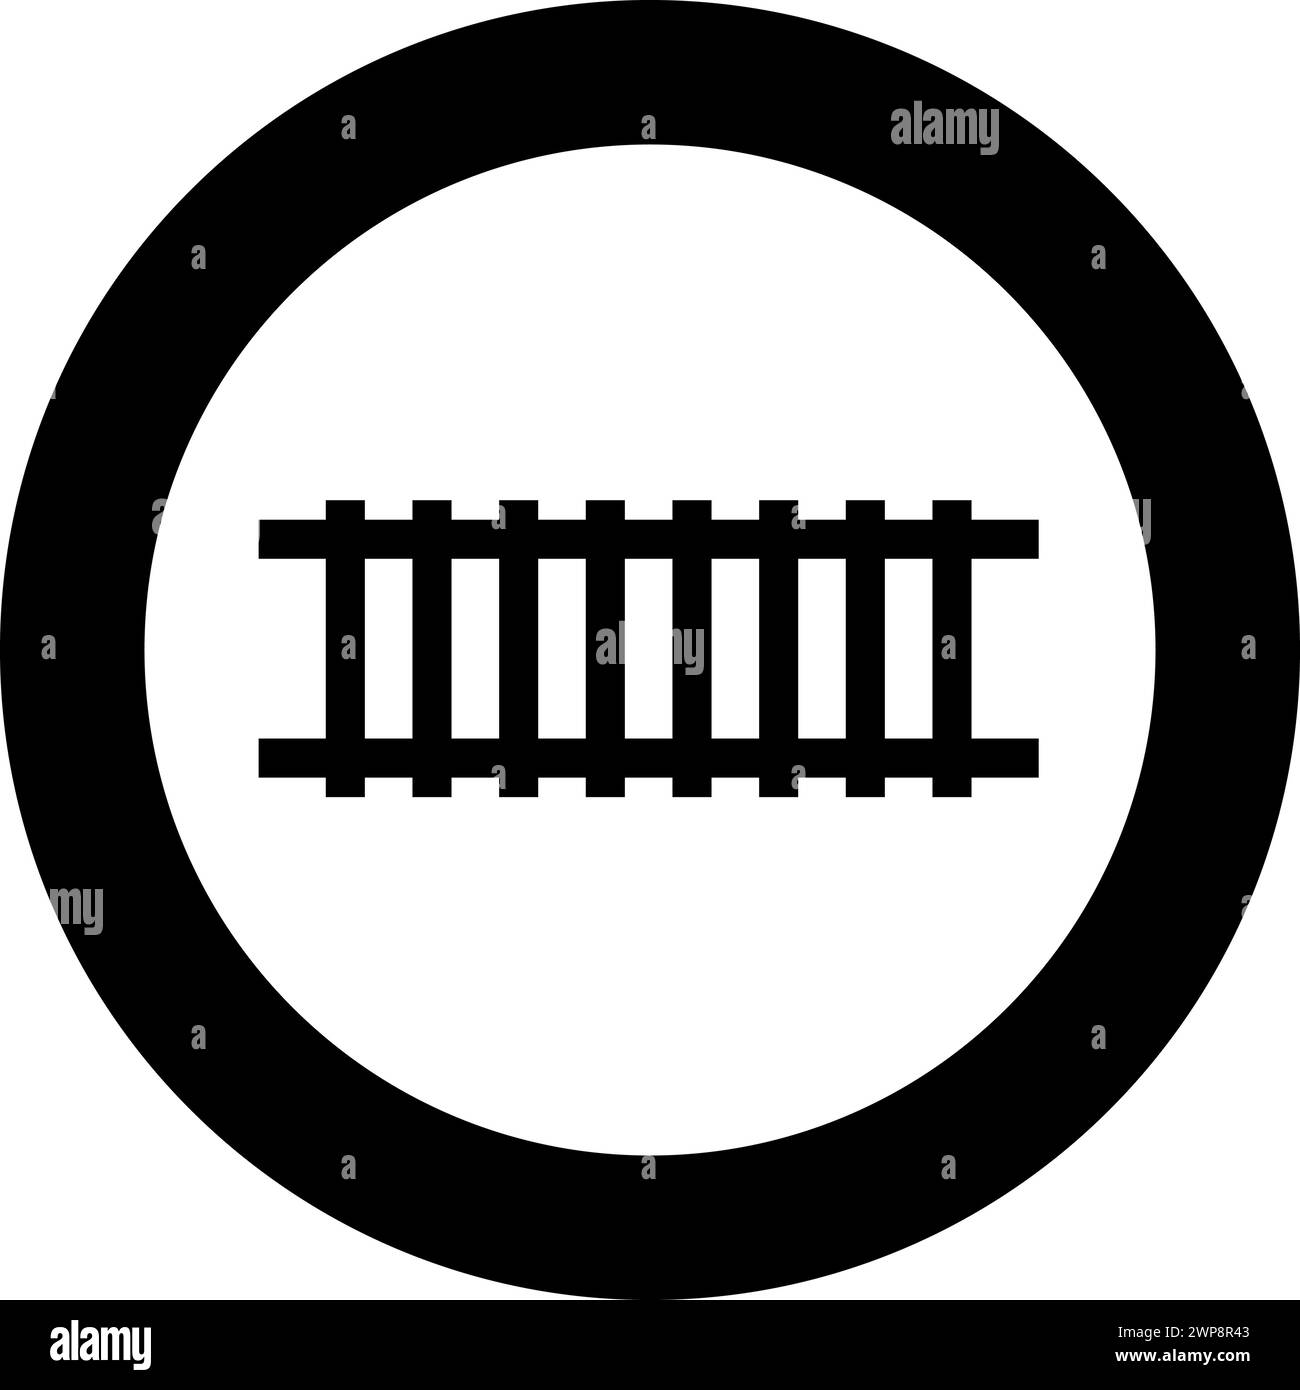 Binario ferroviario percorso ferroviario ferroviario treno metropolitana metropolitana tram concetto di trasporto icona in cerchio in colore nero vettoriale immagine solida Illustrazione Vettoriale